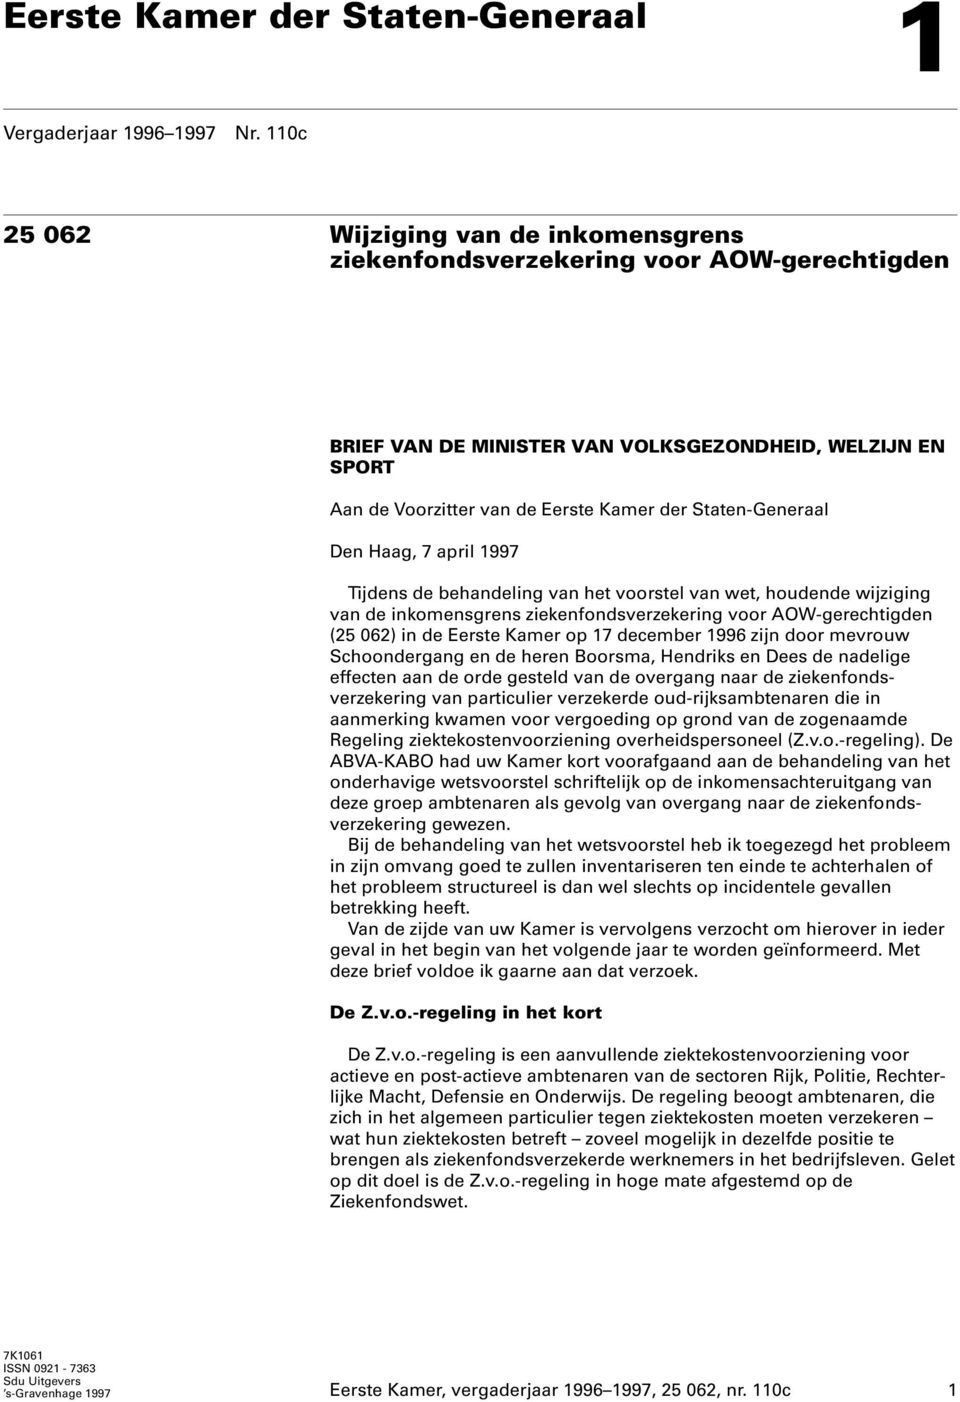 Staten-Generaal Den Haag, 7 april 1997 Tijdens de behandeling van het voorstel van wet, houdende wijziging van de inkomensgrens ziekenfondsverzekering voor AOW-gerechtigden (25 062) in de Eerste